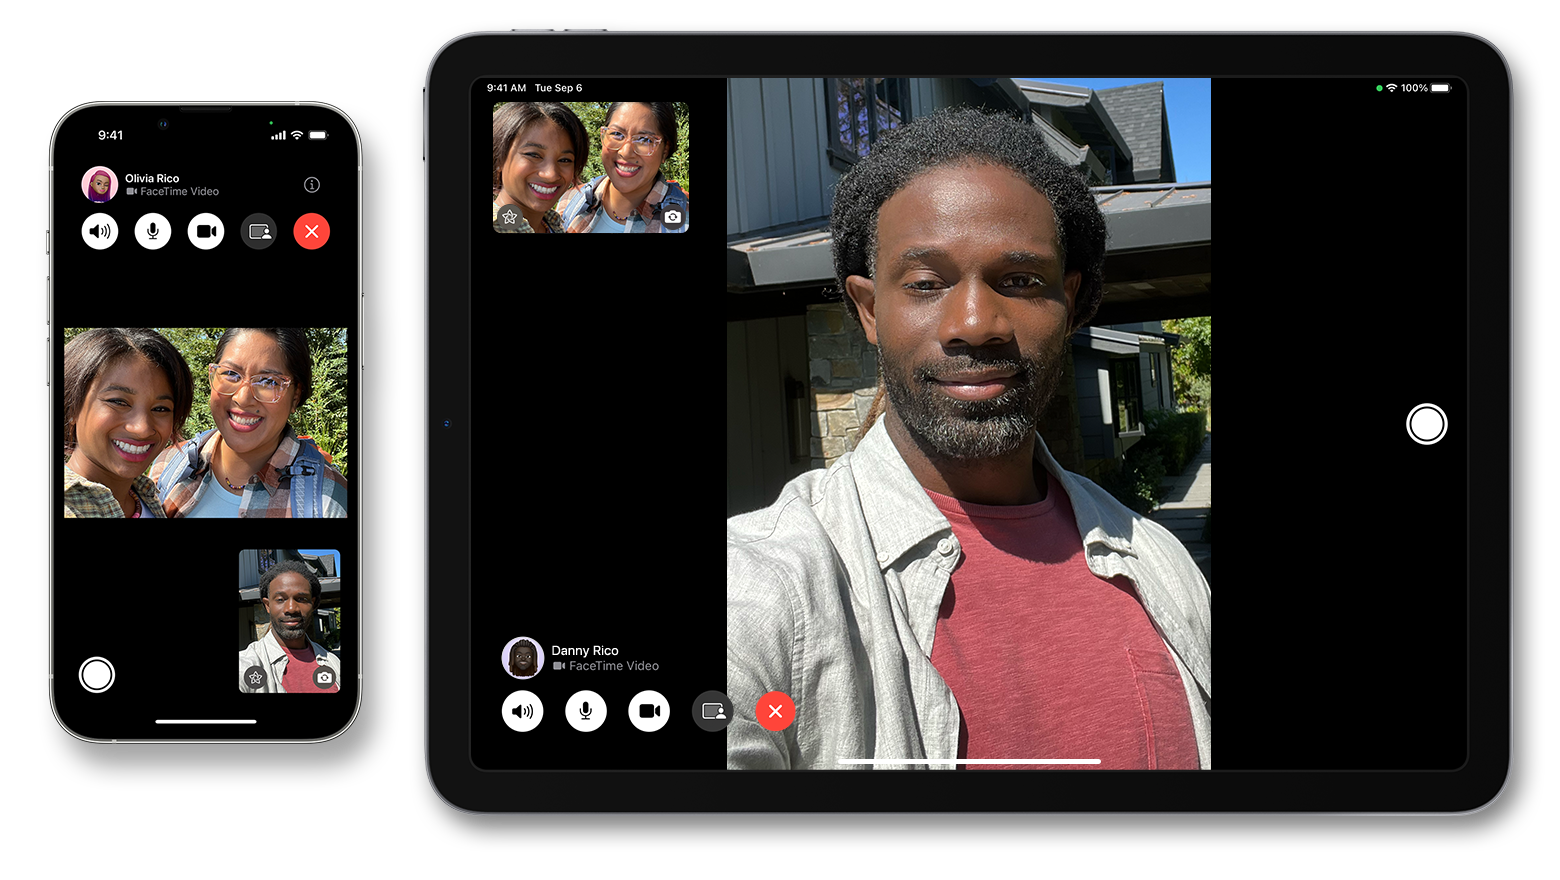 Un iPhone junto a un iPad. En ambos dispositivos, se muestran videollamadas de FaceTime en curso.